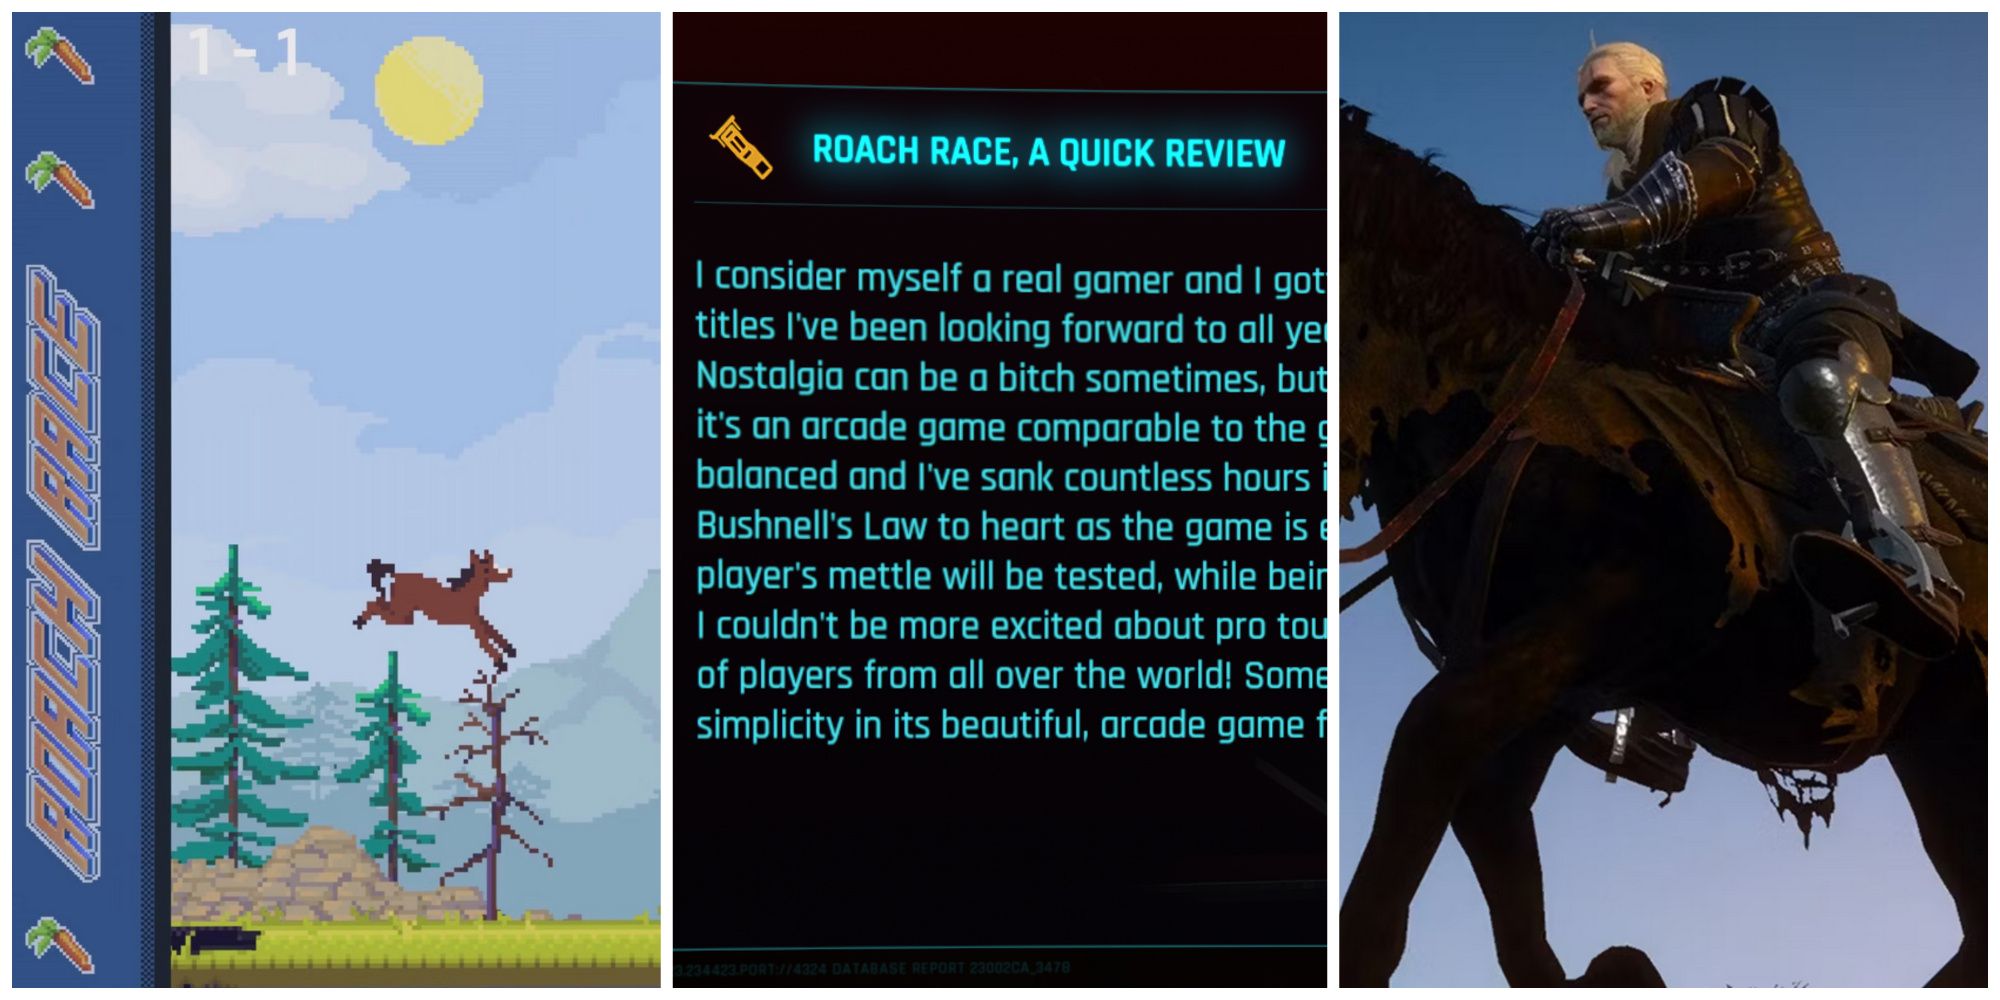 Cyberpunk 2077 Roach Race Arcade Game, Phantom Liberty Roach Race Review, Witcher Geralt On Roach